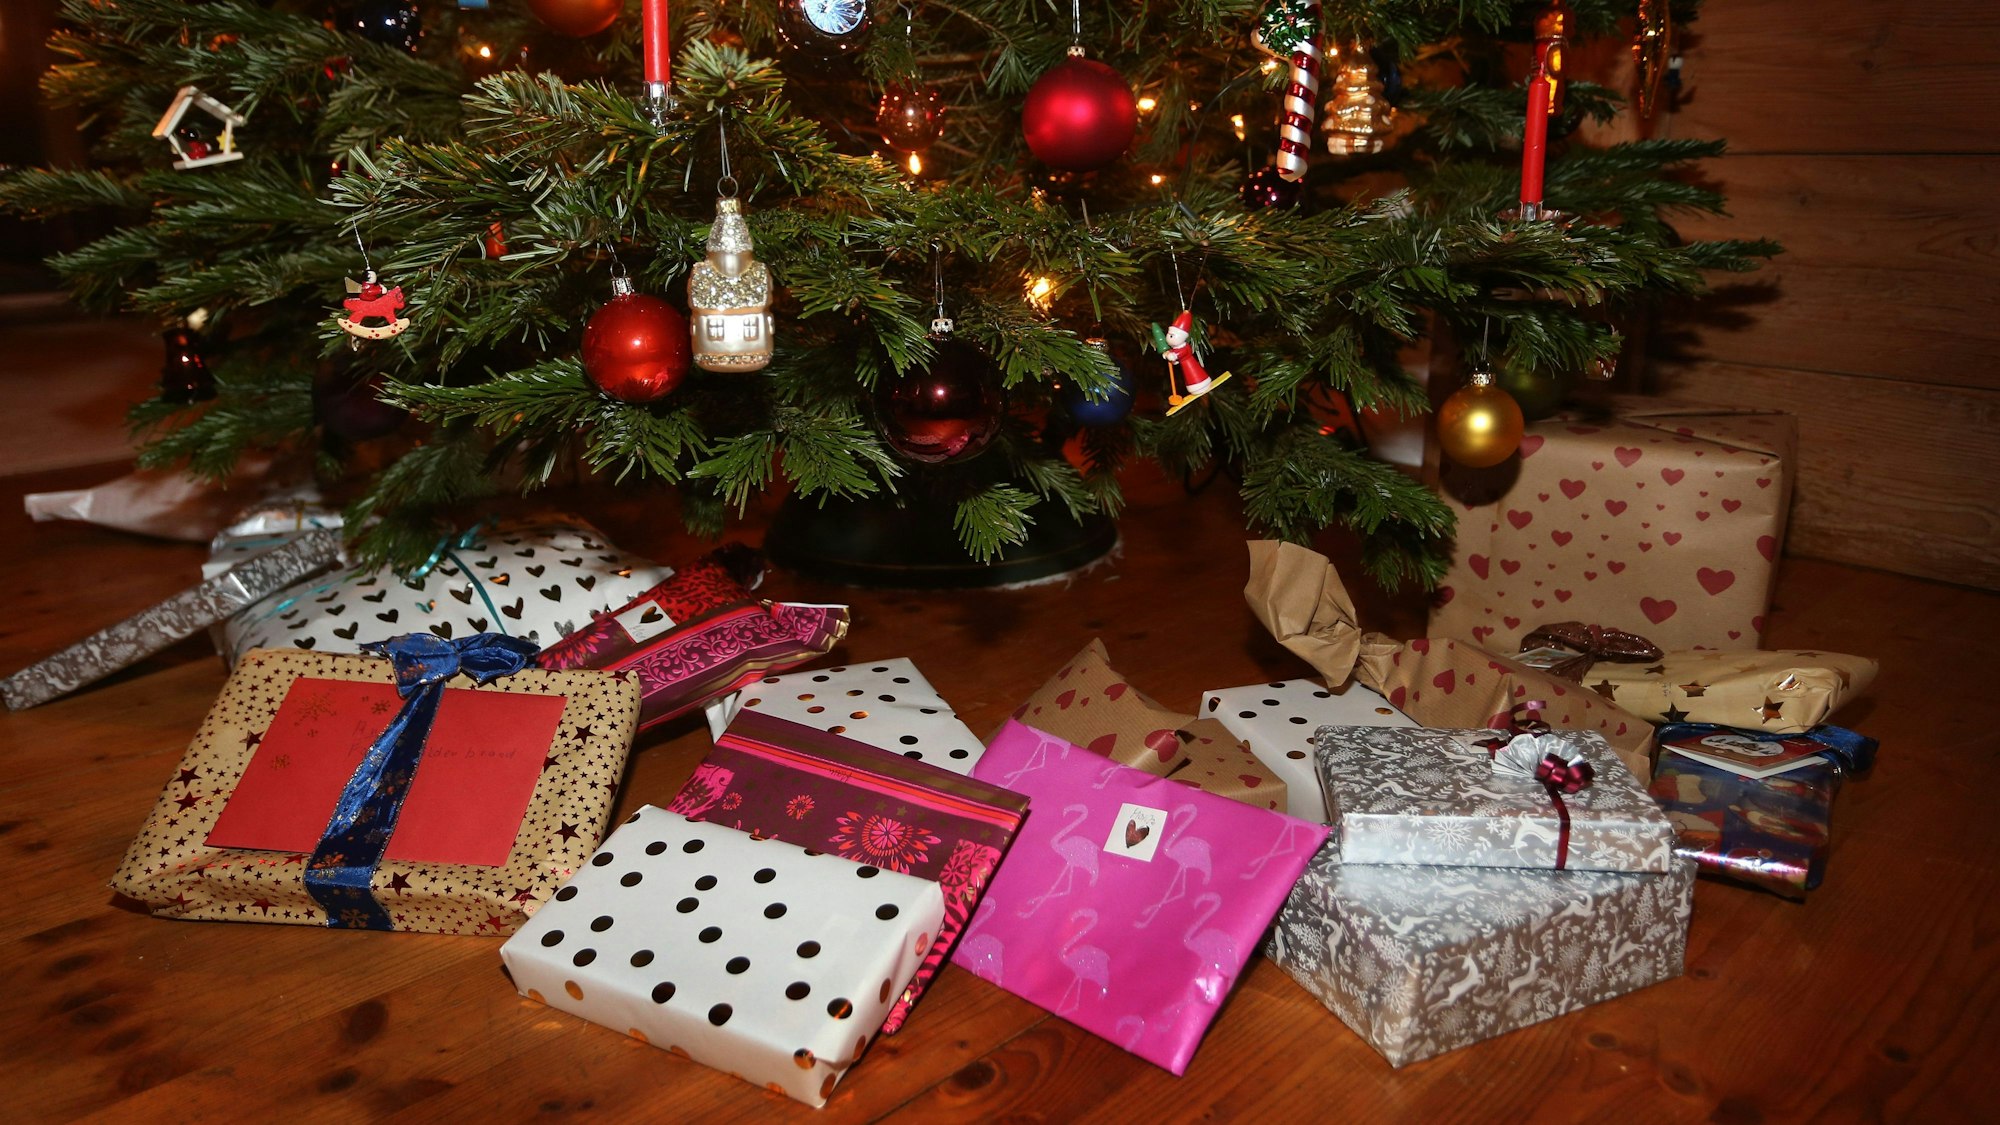 Verpackte Weihnachtsgeschenke liegen in einem Wohnzimmer unter einem geschmückten Weihnachtsbaum.